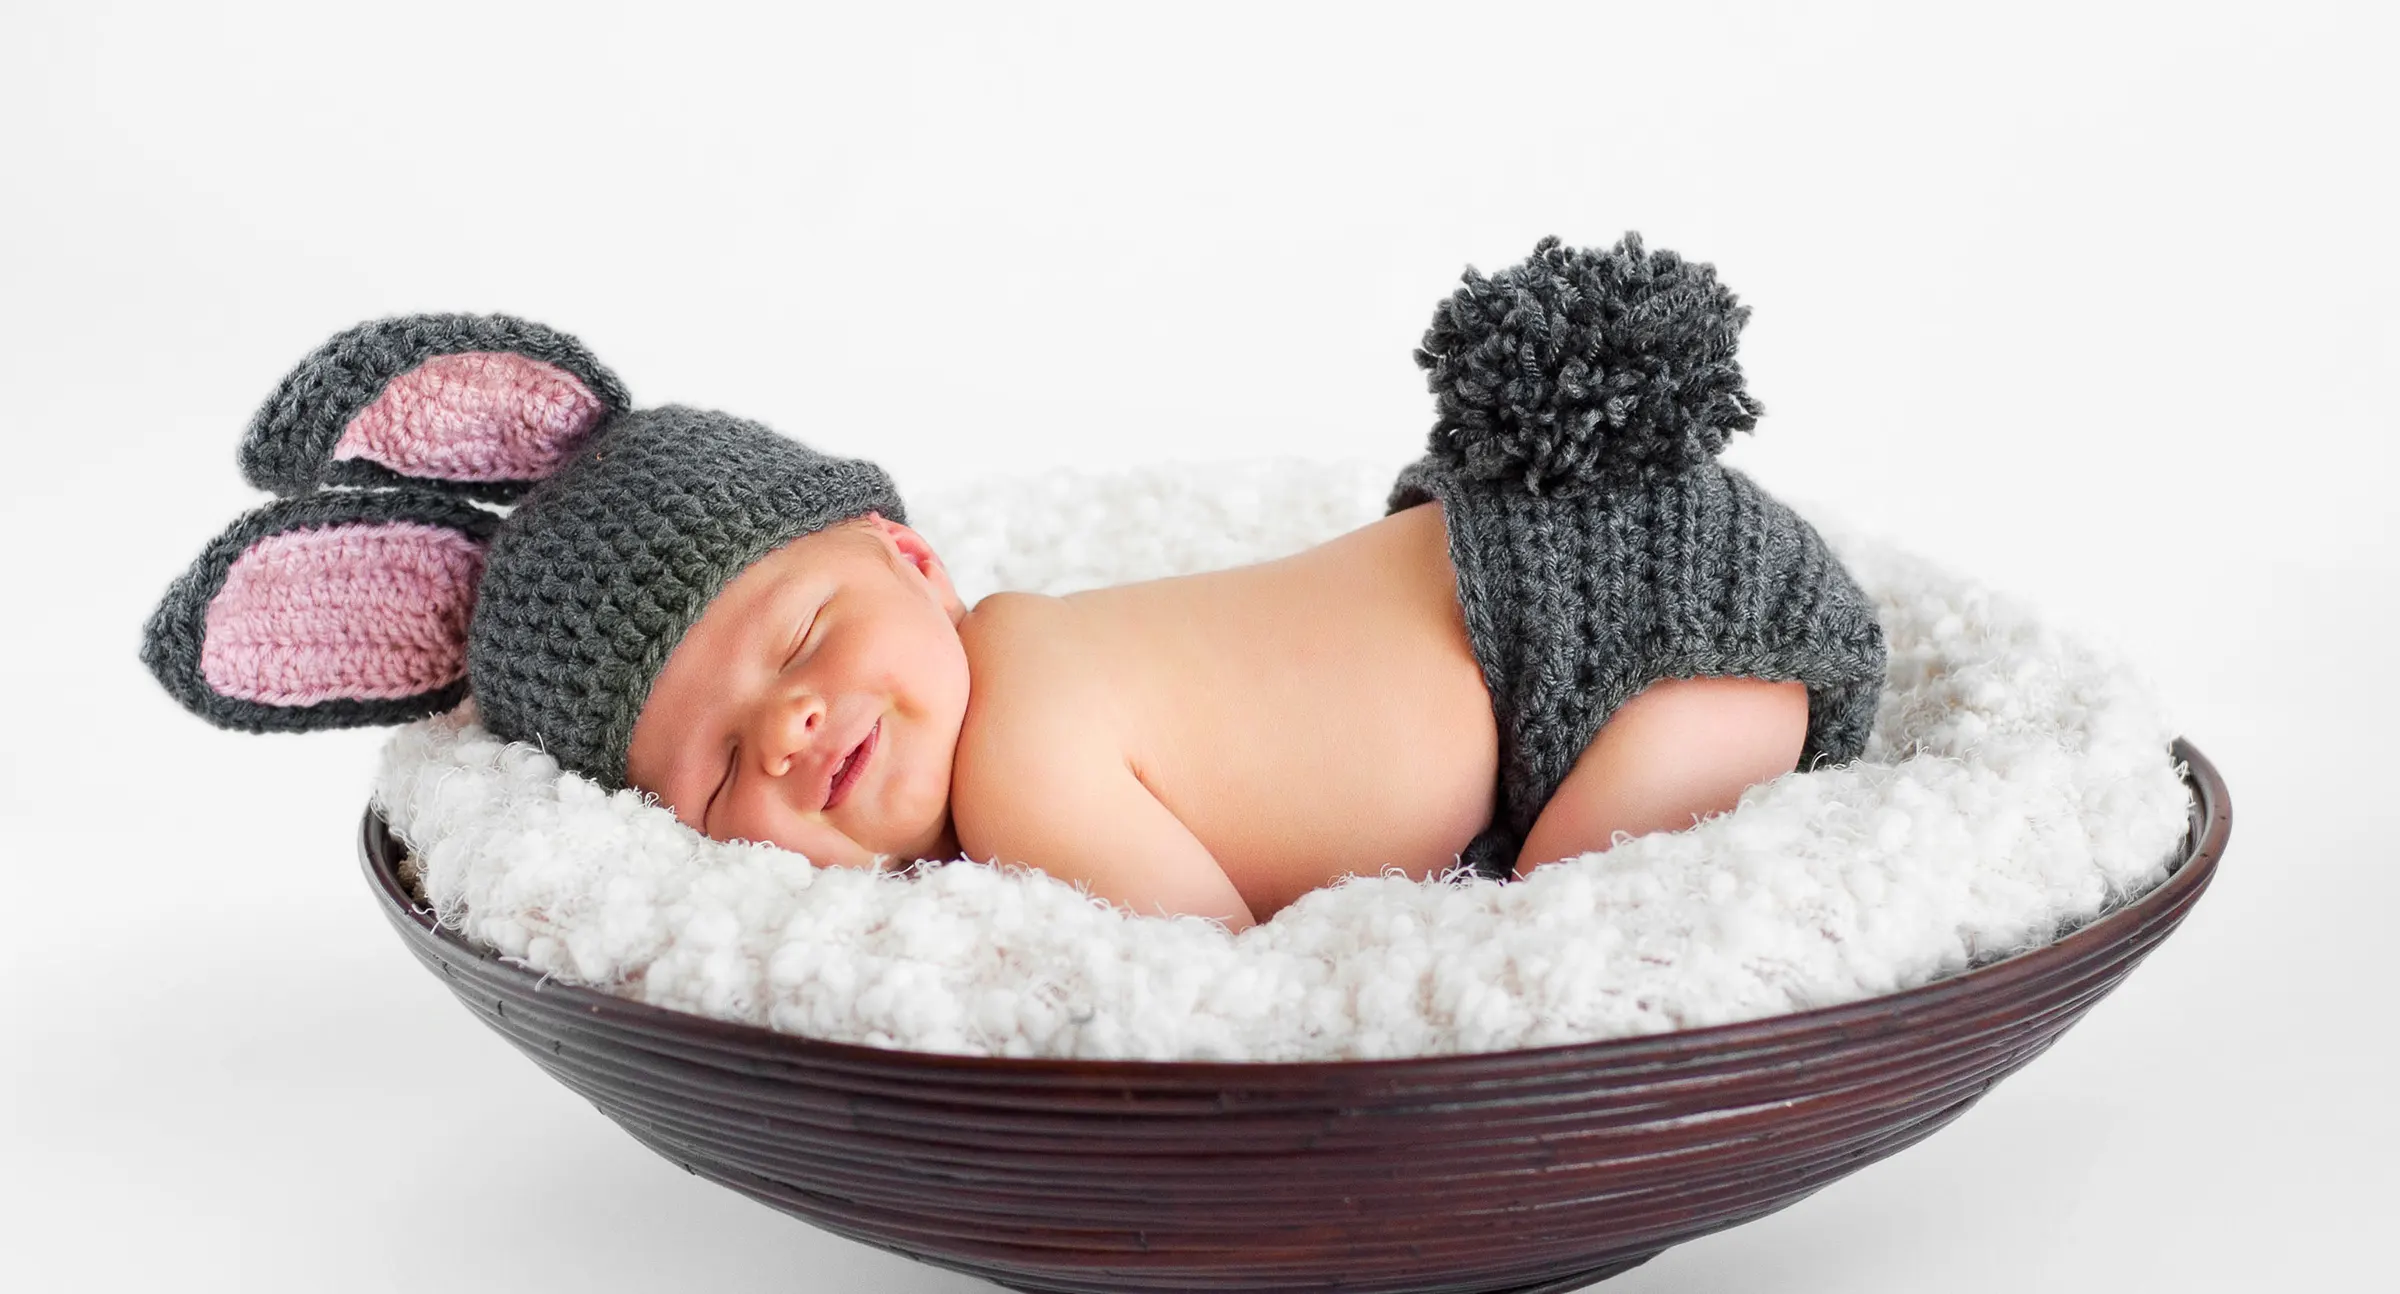 En glad baby, der lægger sig ned med kaninår hat.